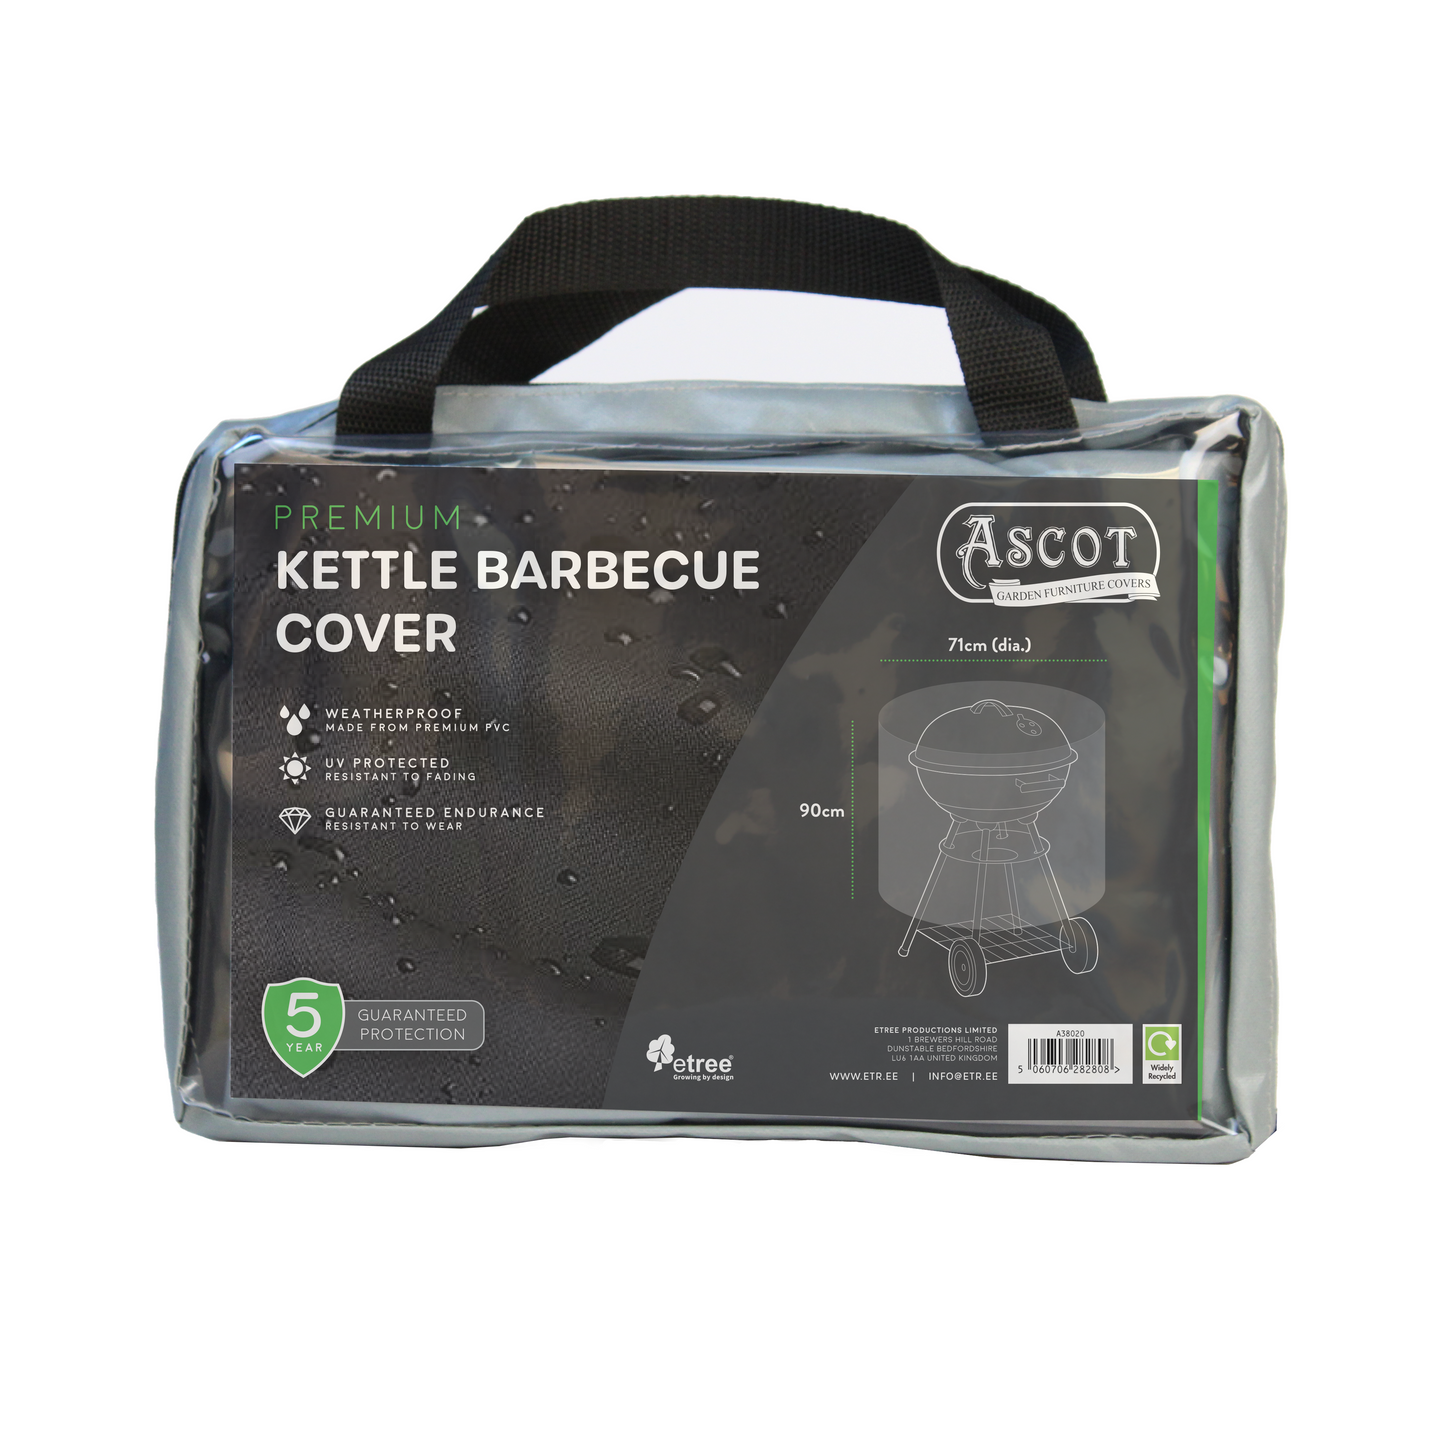 Premium Kettle Barbecue Cover - 71 (Dia.) X 90 (H) cm